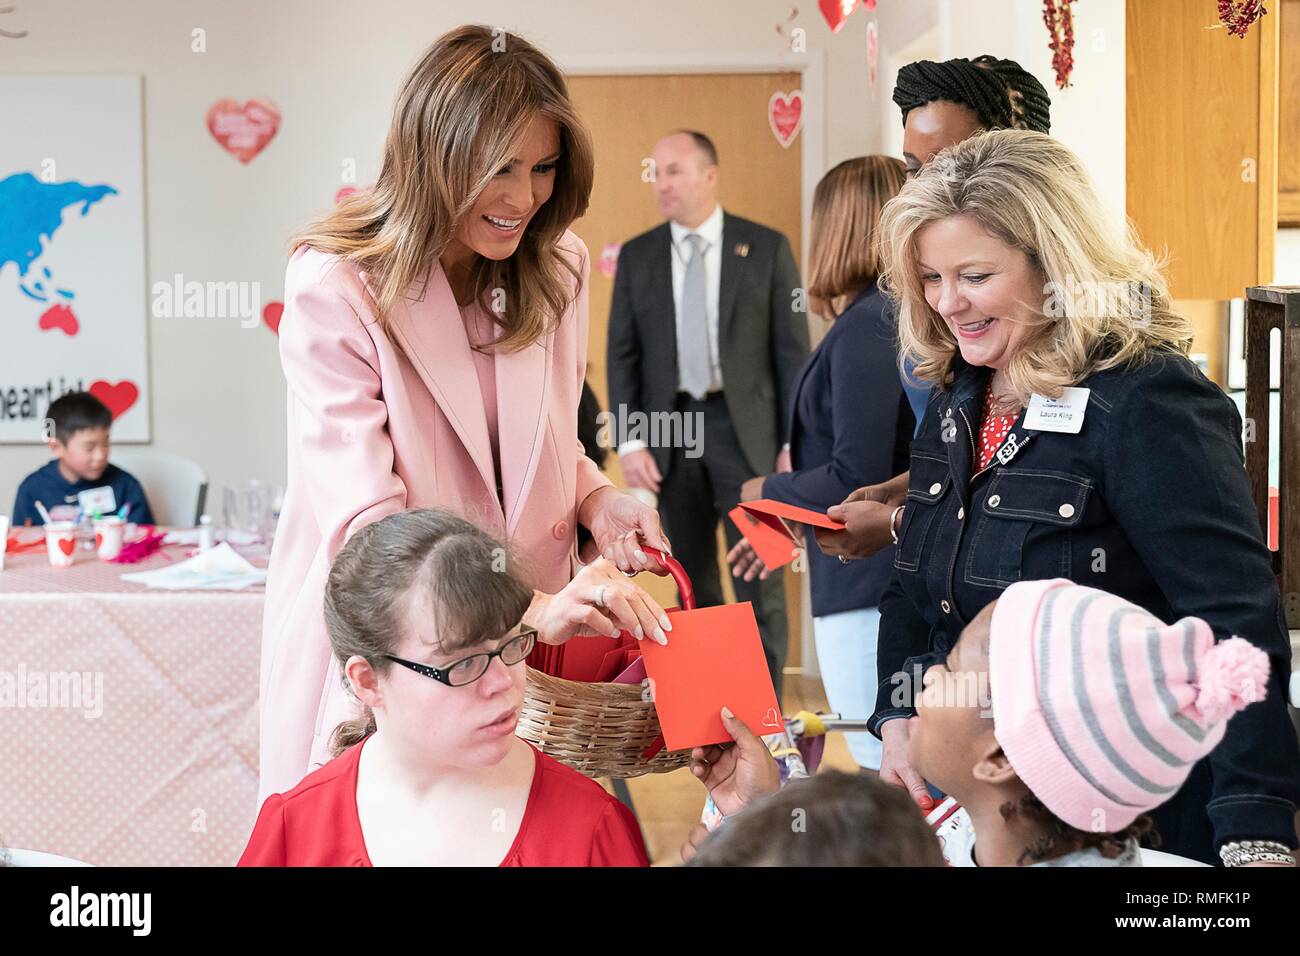 Us-First Lady Melania Trump visits Kinder, bei denen experimentelle medizinische Behandlung in Valentinstag Festlichkeiten am Inn am Nationalen Institut für Gesundheit Februar 14, 2019 in Bethesda, Maryland. Stockfoto